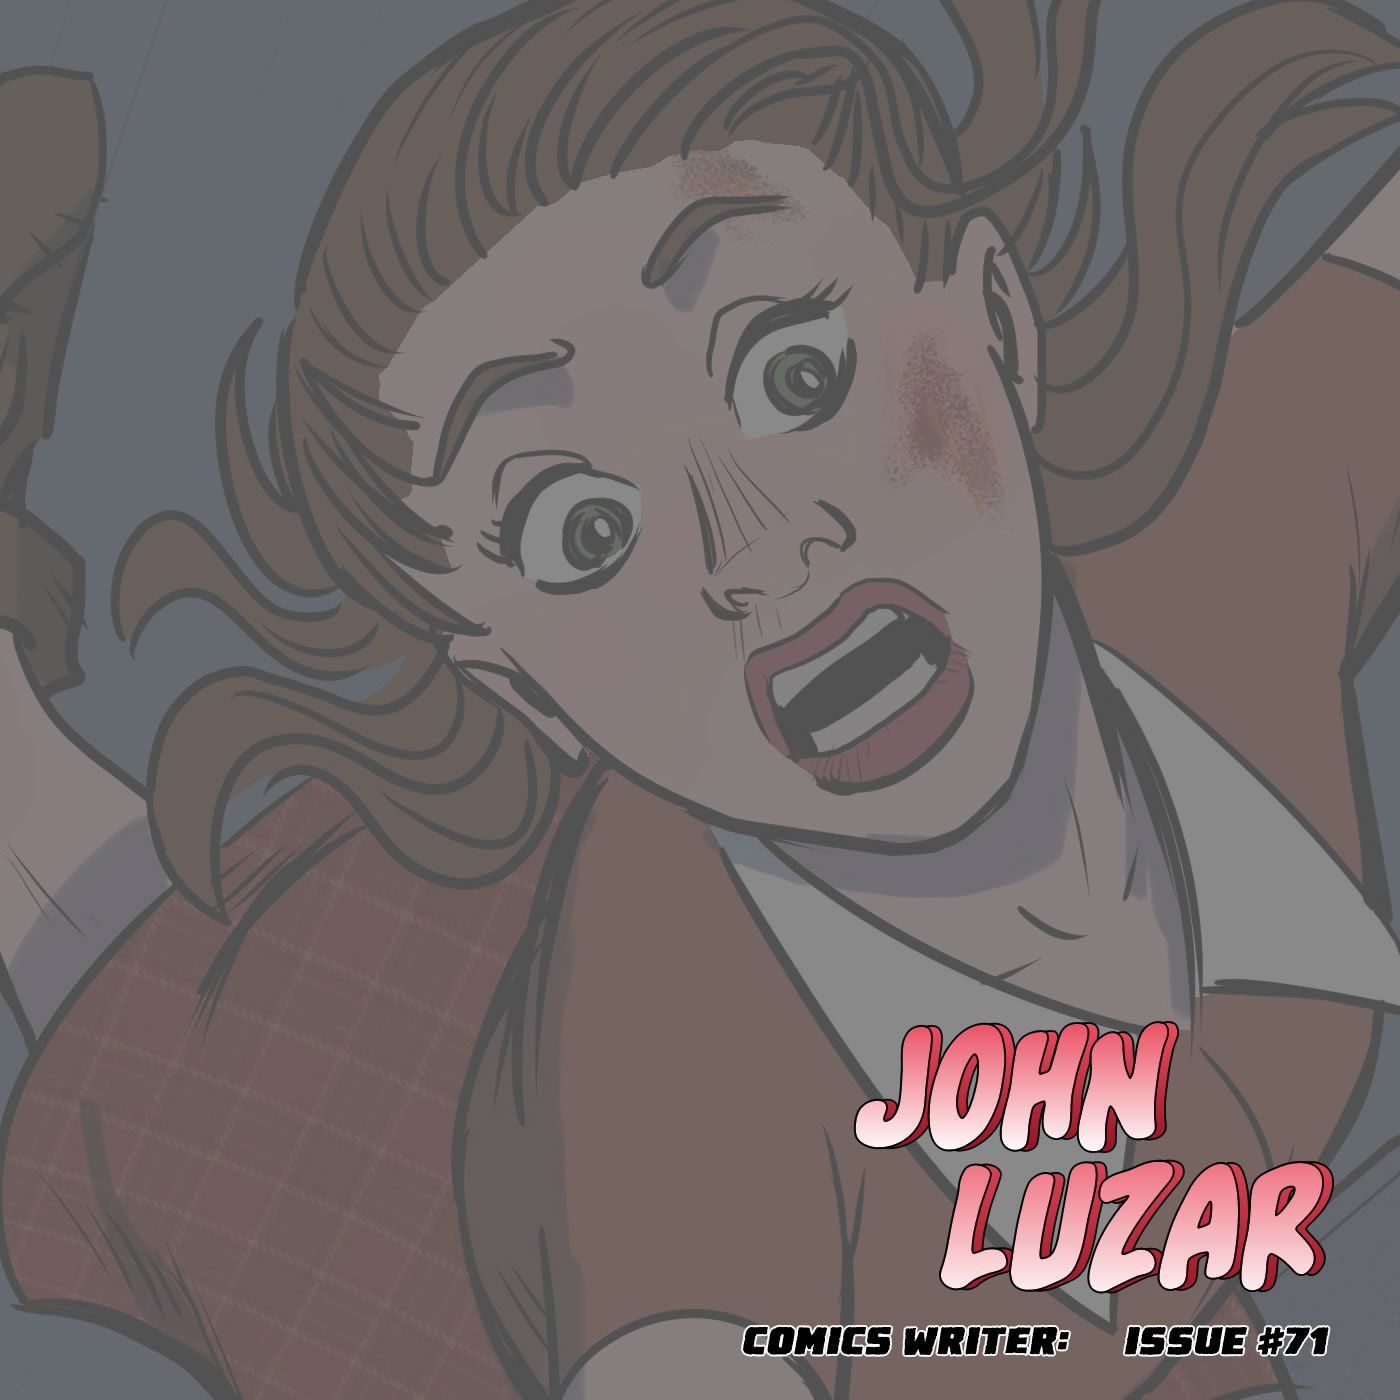 John Luzar on writing, antifascism, theater, and making comics